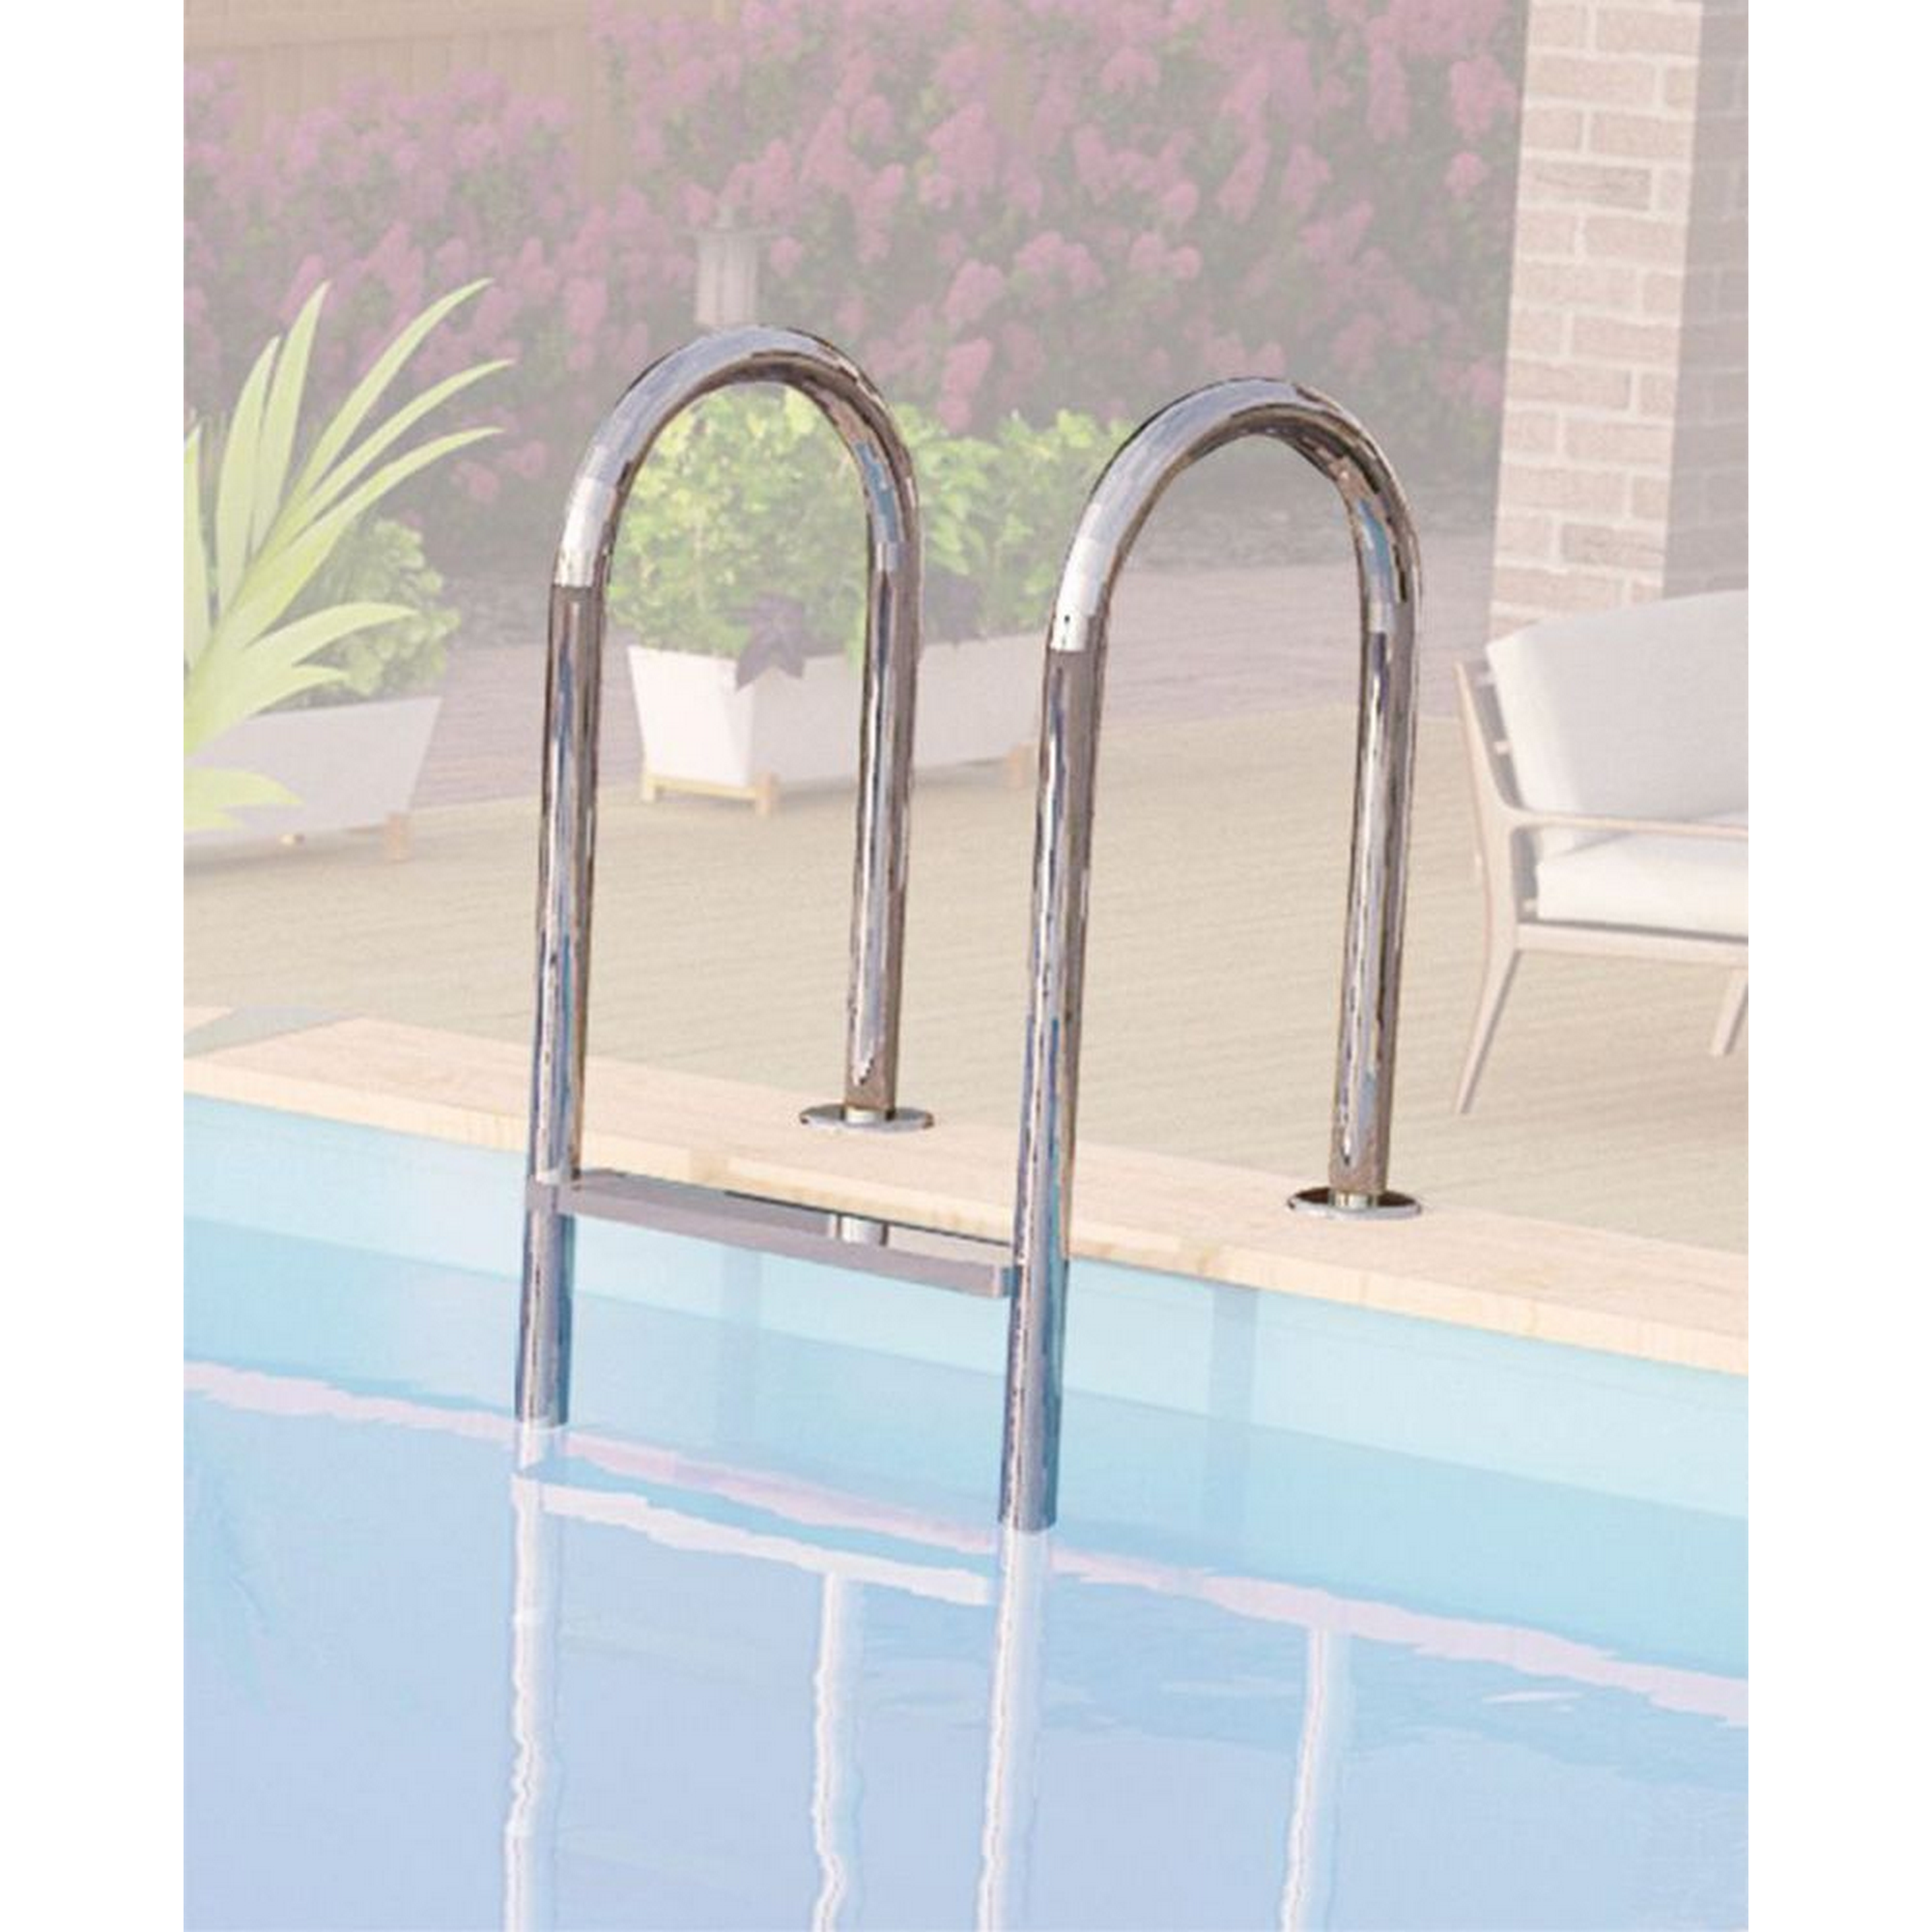 Massivholzpool-Set 'Modell Rechteck pool-Set 2 B' 387 x 300 x 124 cm mit Sonnendeck und Einhängeleiter + product picture